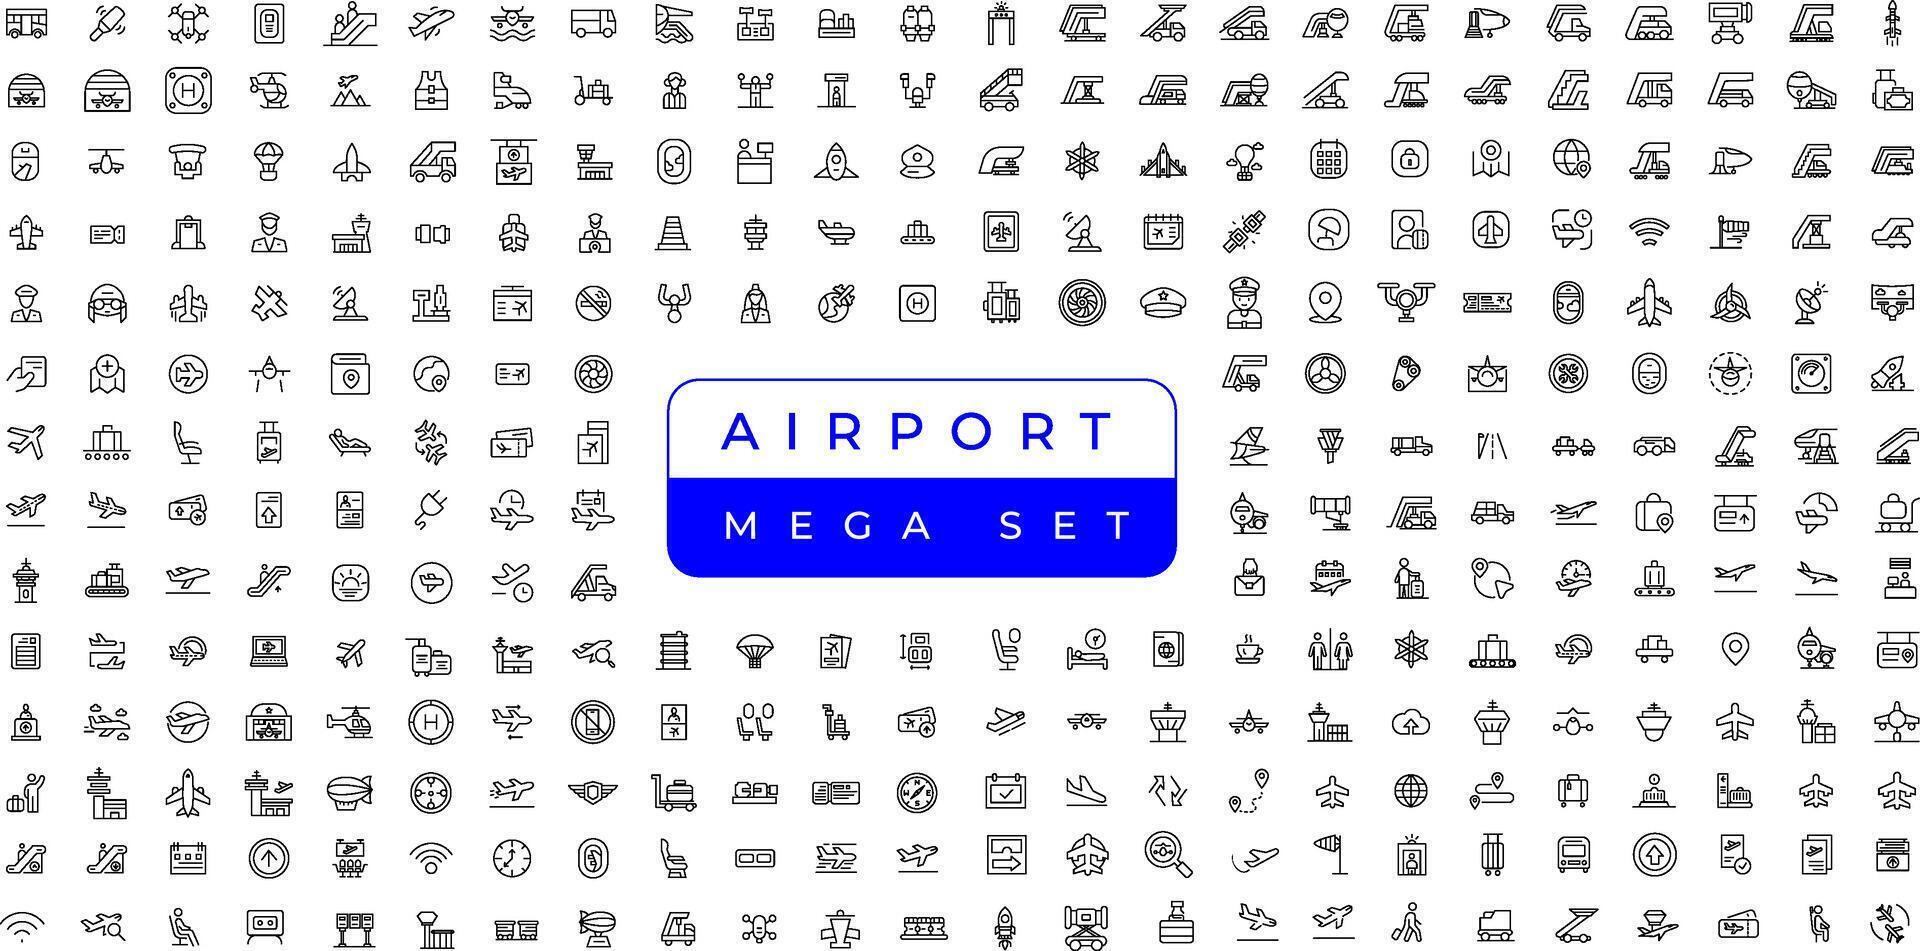 aeropuerto vector línea icono colocar. contiene lineal contorno íconos me gusta avión, boleto, equipaje, asiento, Wifi, bolsa, partida, Terminal, pasaporte, transporte, equipaje, avión